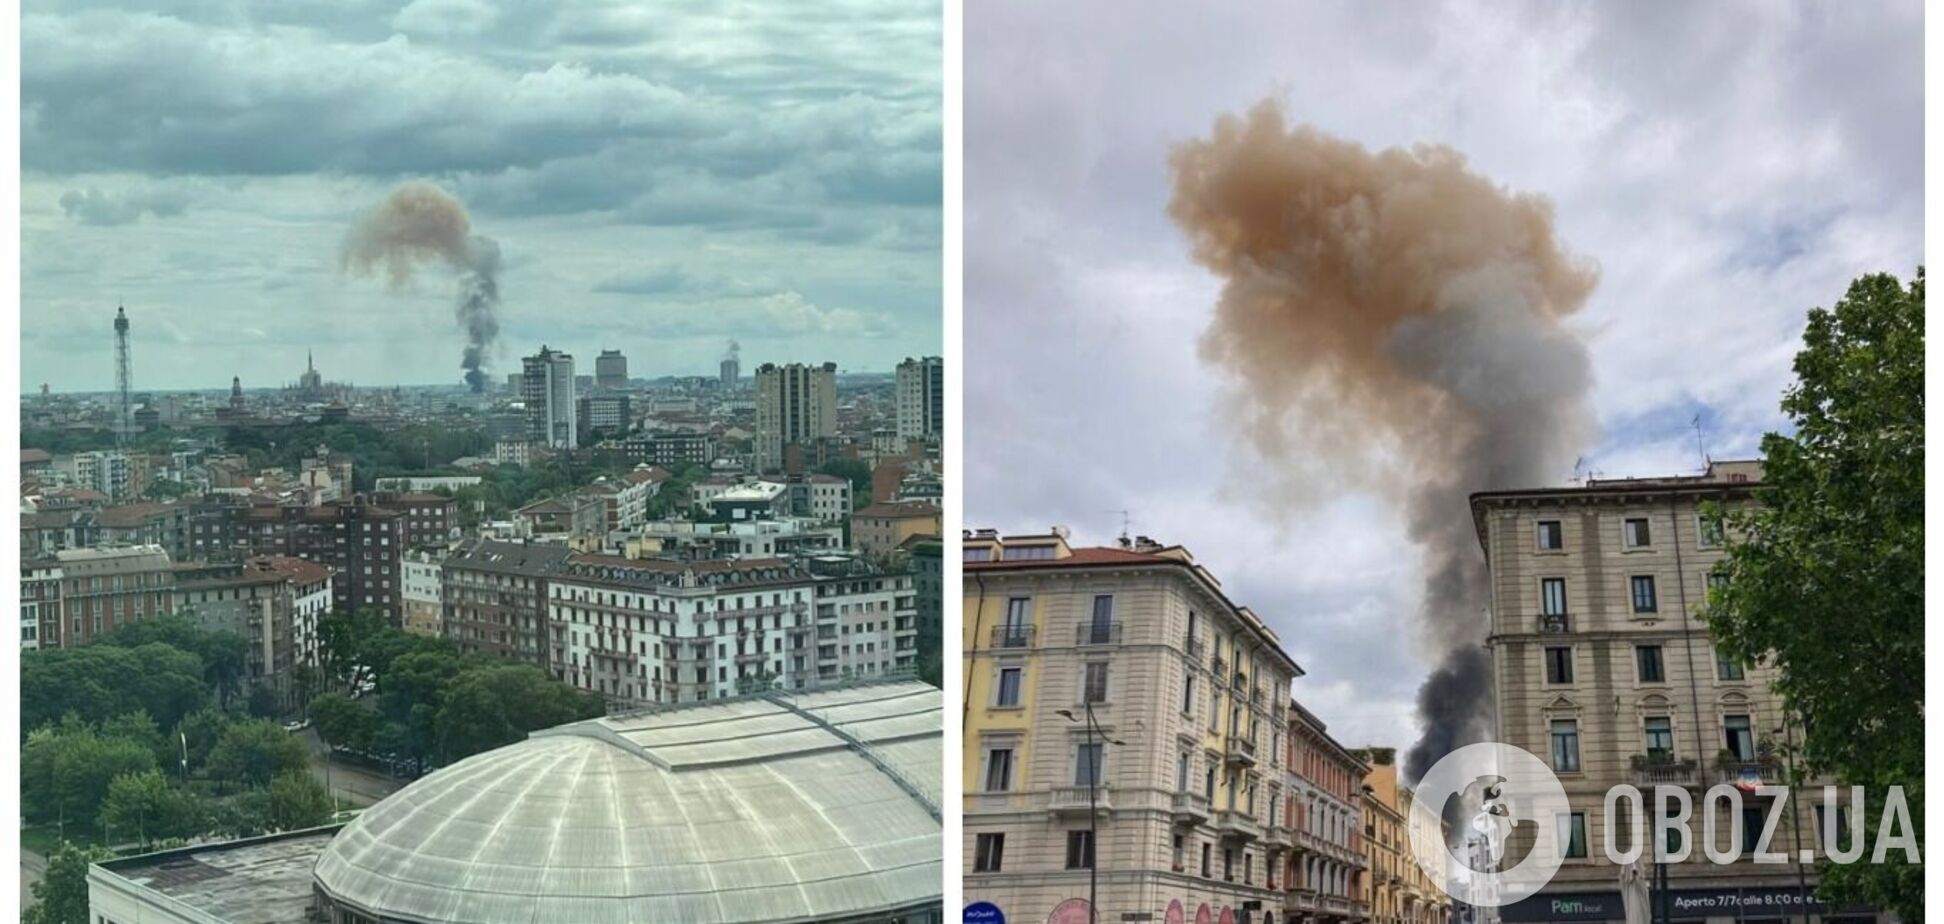 В центре Милана произошел взрыв, горели авто: есть пострадавшие. Фото и видео